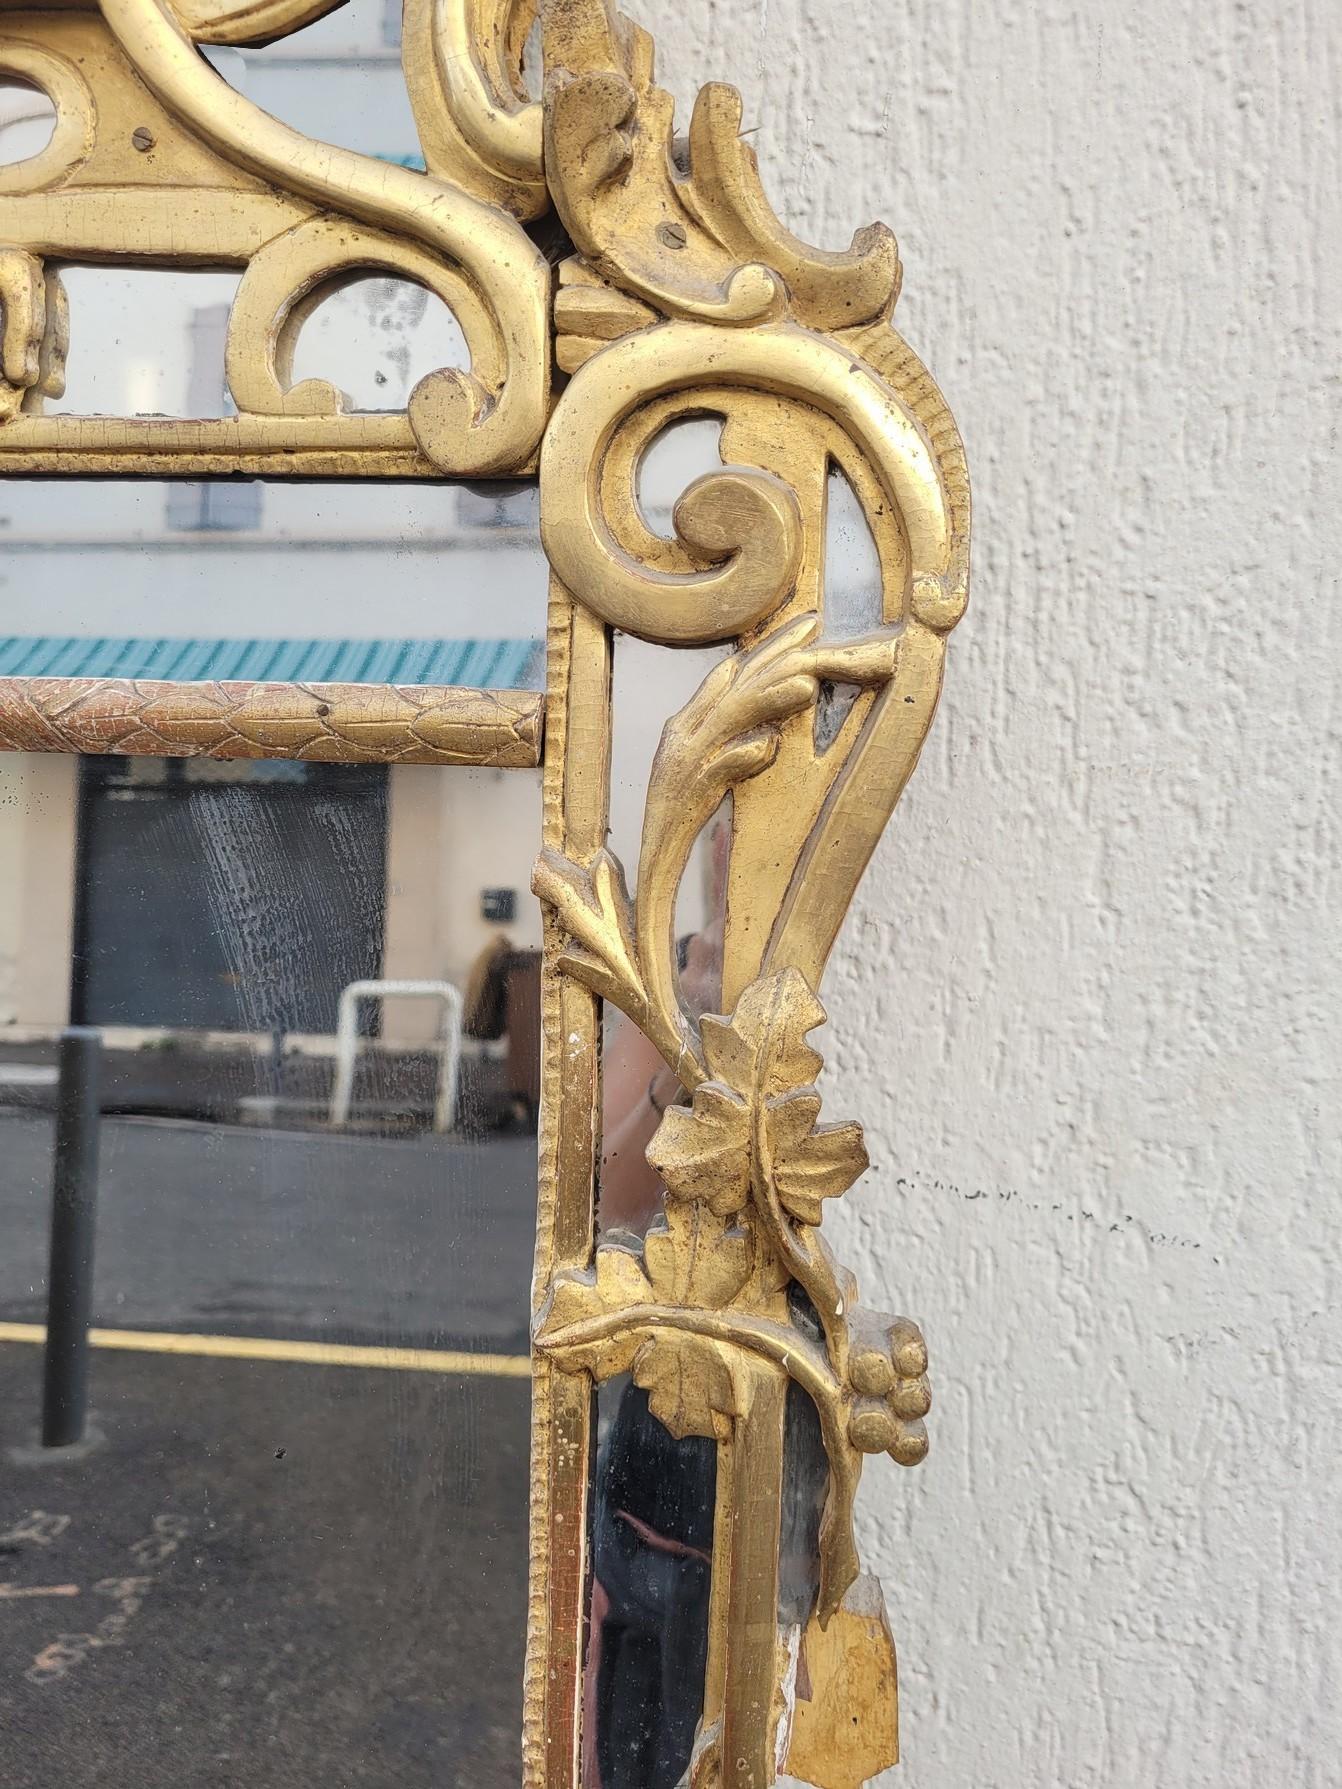 Charmanter provenzalischer Spiegel aus vergoldetem Holz, gekrönt von einer Vase mit Früchten und Blättern

Typisches Werk aus der Region Beaucaire, Jahrgang Ende 18. Anfang 19.

Guter allgemeiner Zustand, es fehlt ein Stück des Spiegels in der